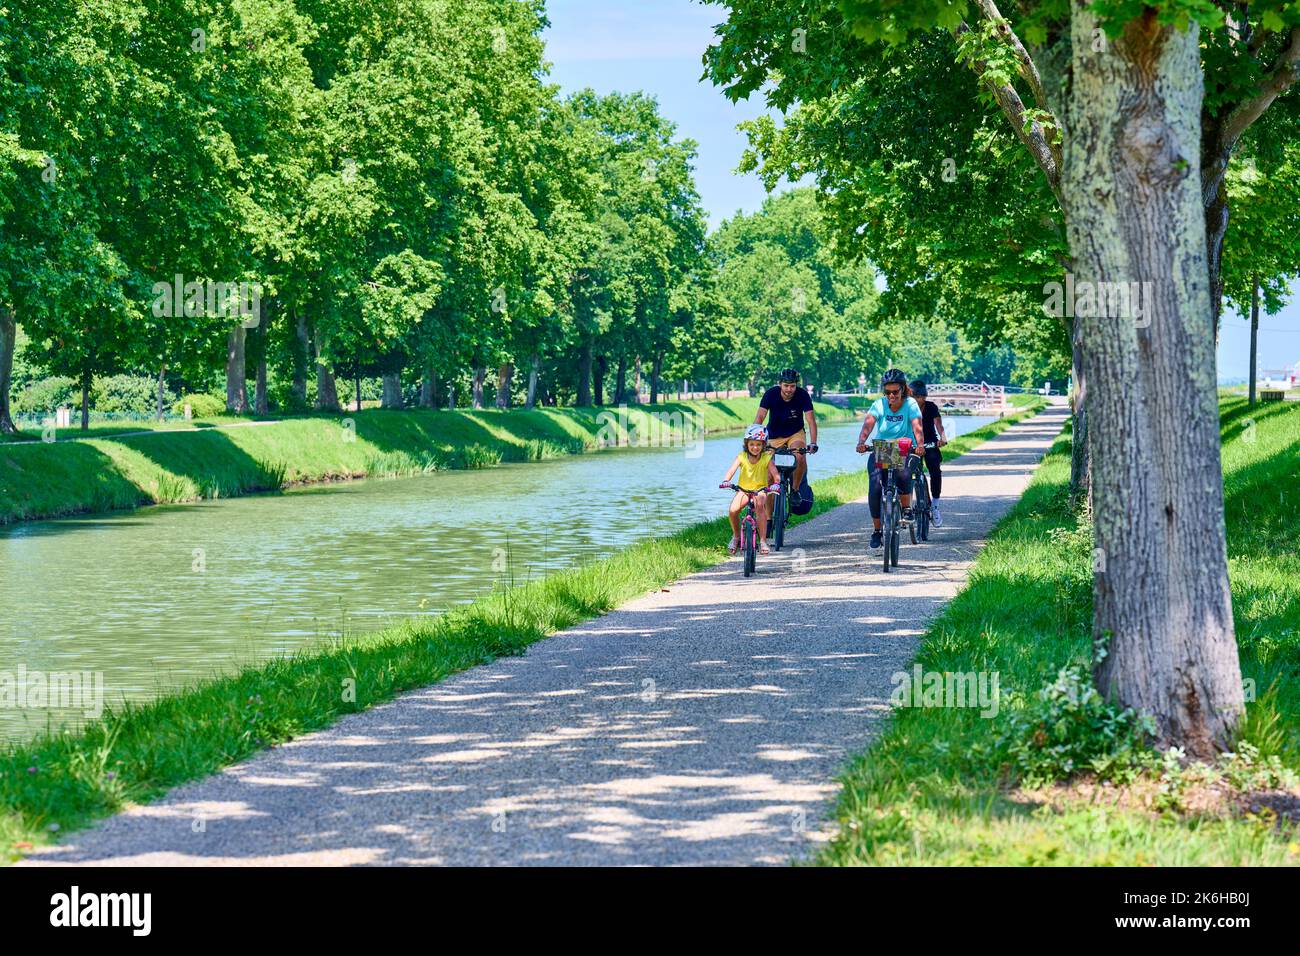 Balade à vélo dans les environs de la piste Montech, le long du canal latéral à la Garonne. Famille vélo ensemble sur le chemin de halage, à l'ombre o Banque D'Images